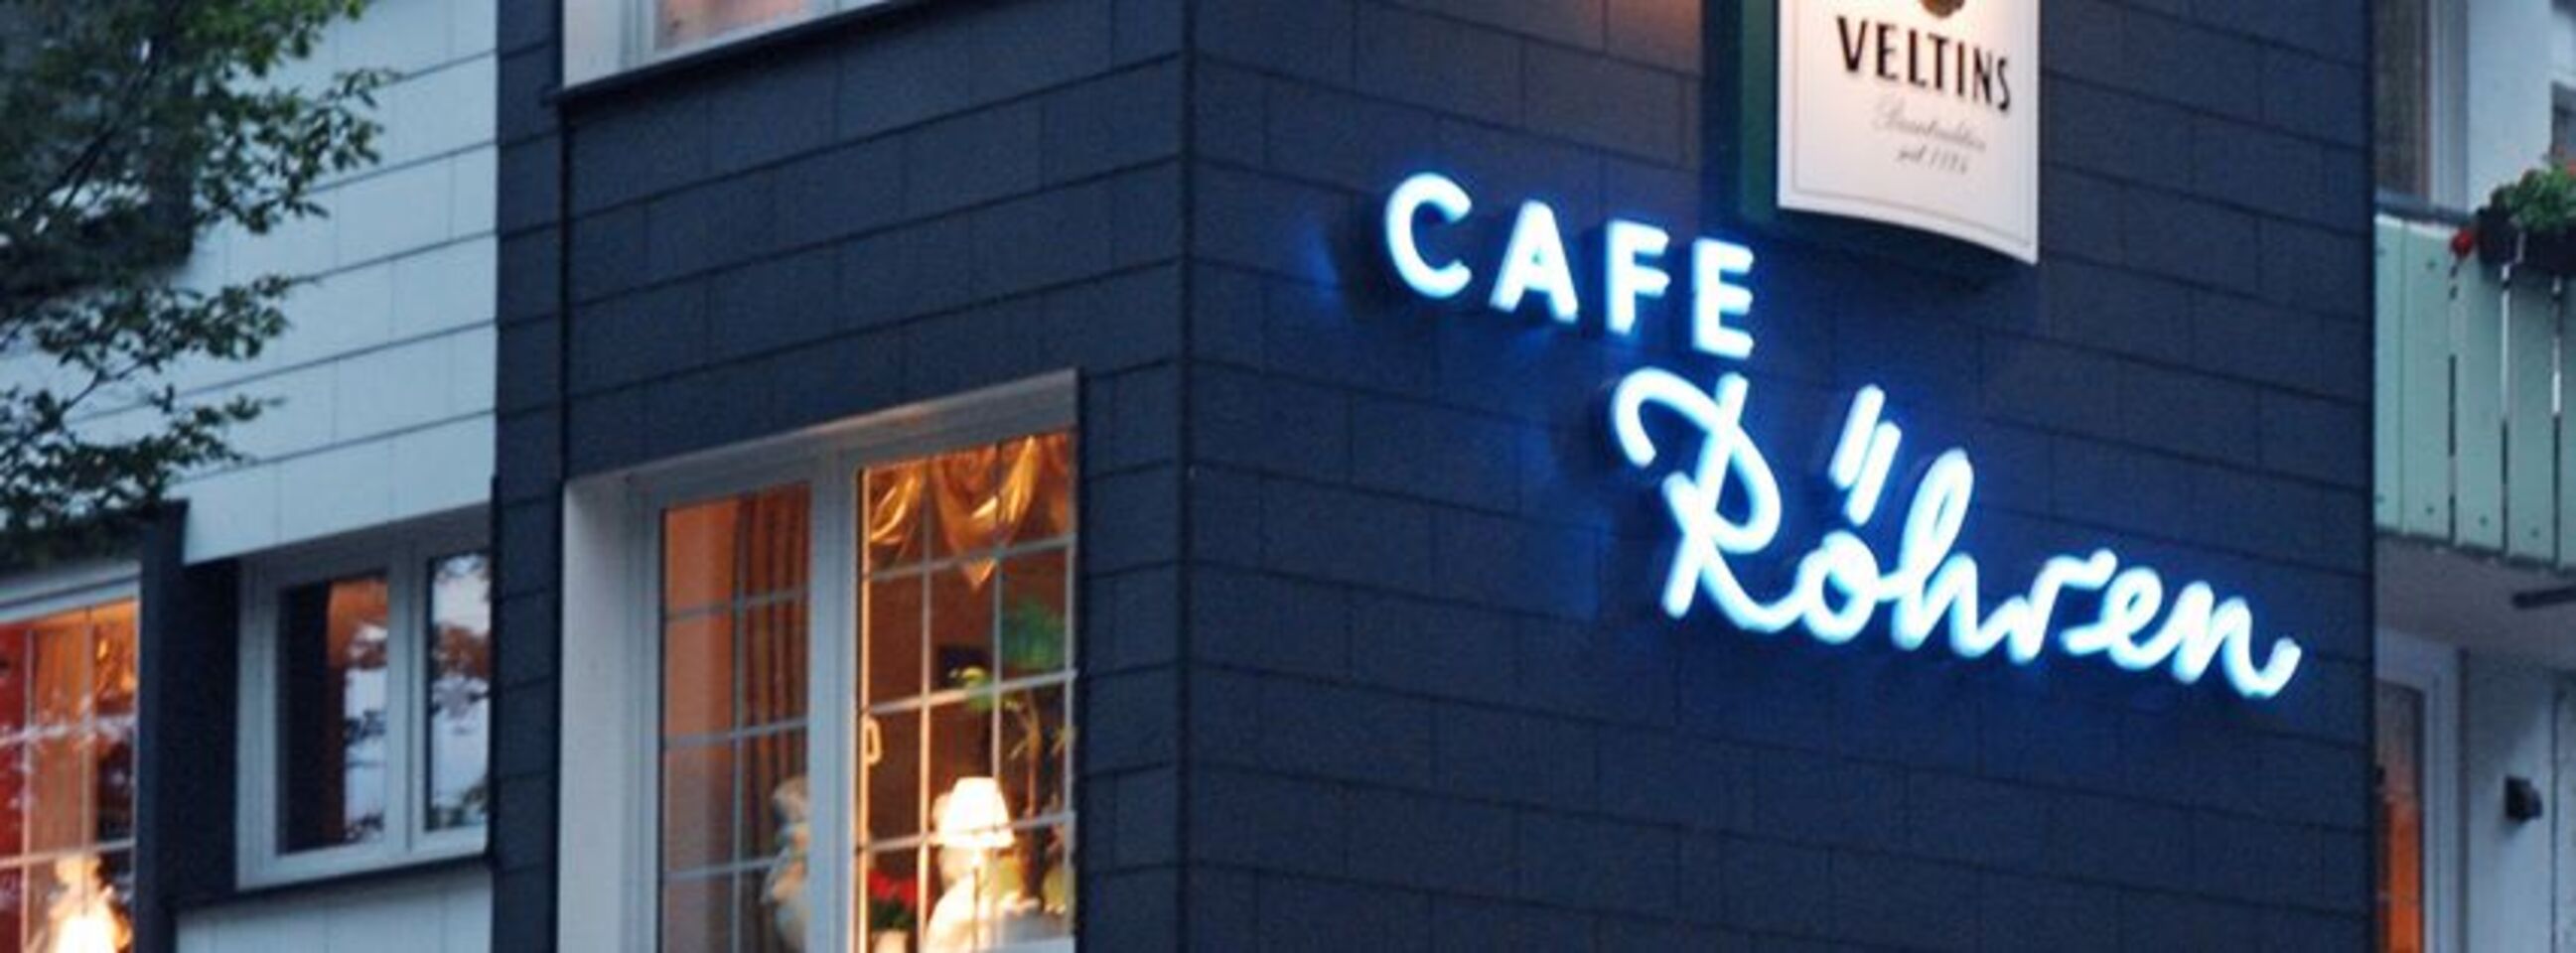 A photo of Café Röhren